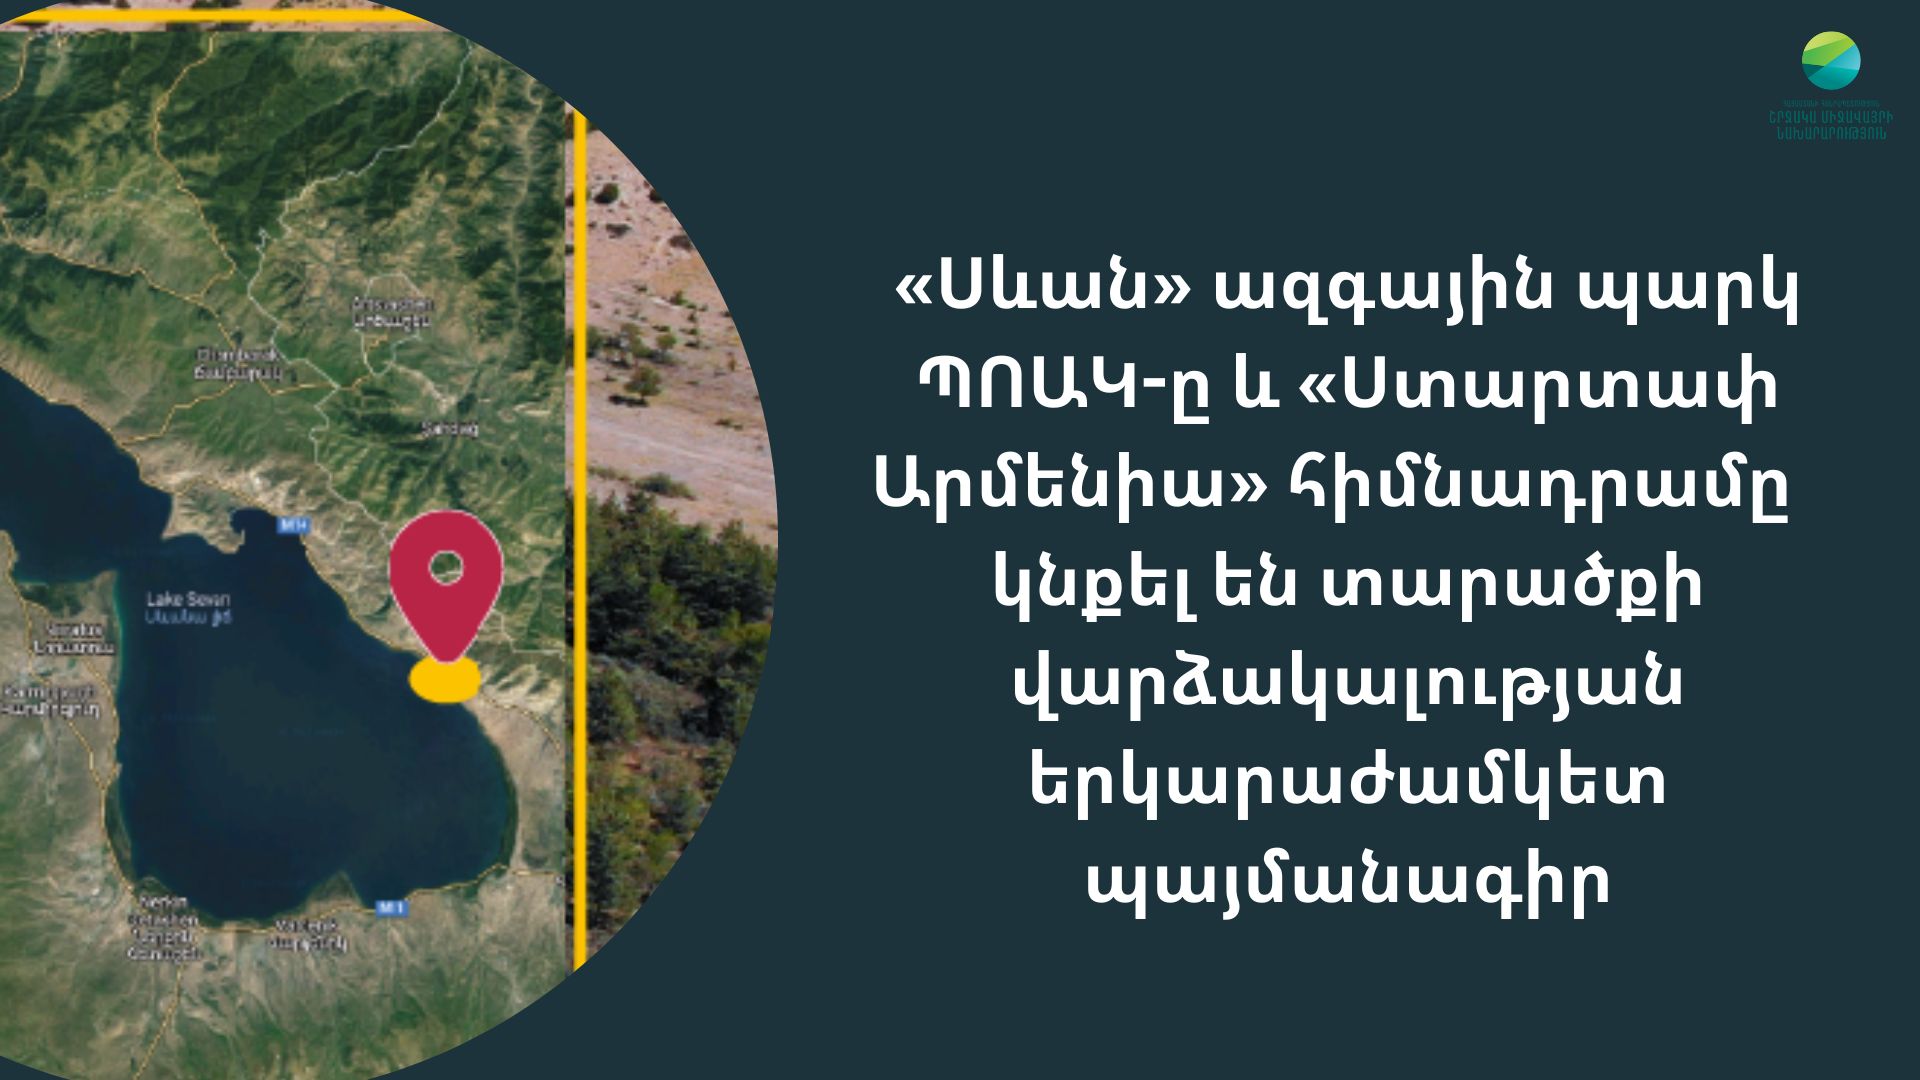 «Սևան Ստարտափ Սամմիթ» ամենամյա վրանային բիզնես ֆորումի անցկացման համար հատկացվել է նոր տարածք